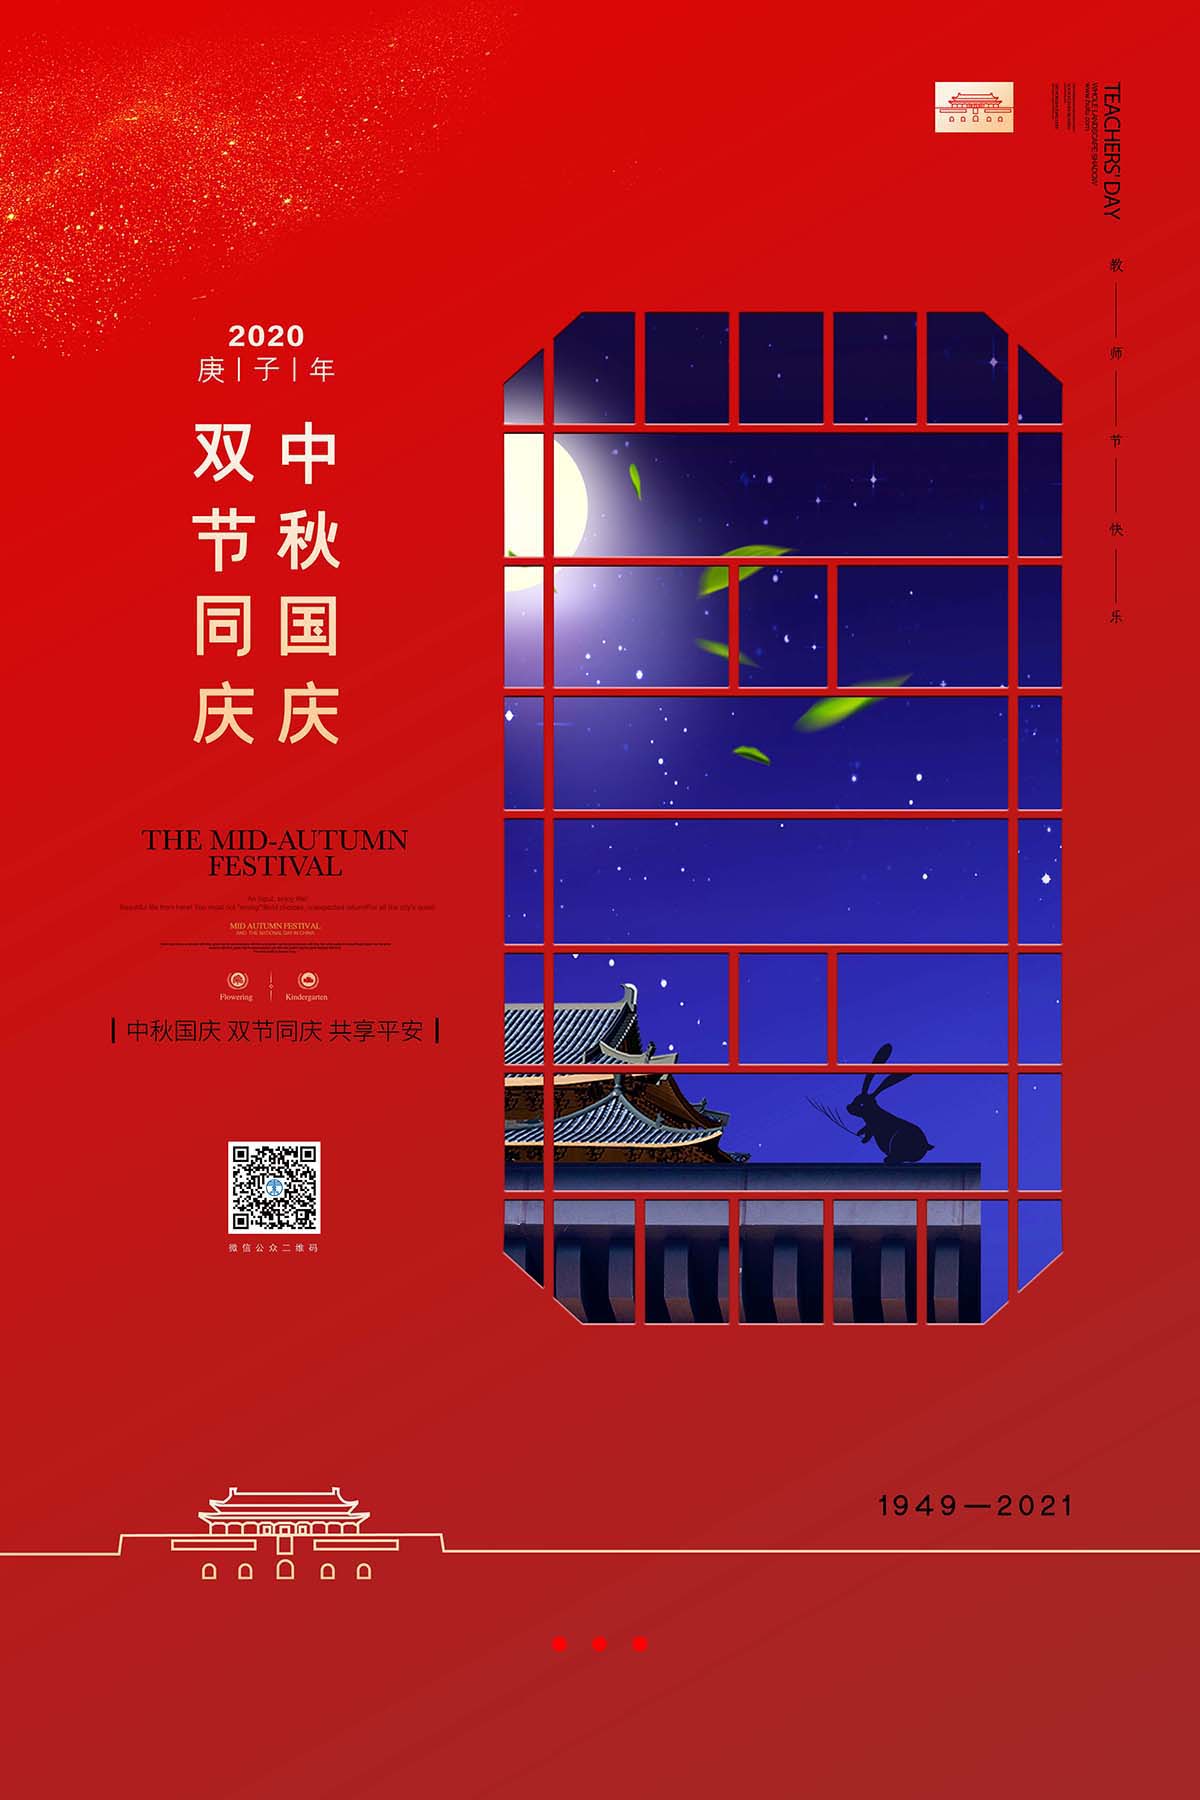 大气红色中秋国庆双节同庆宣传海报